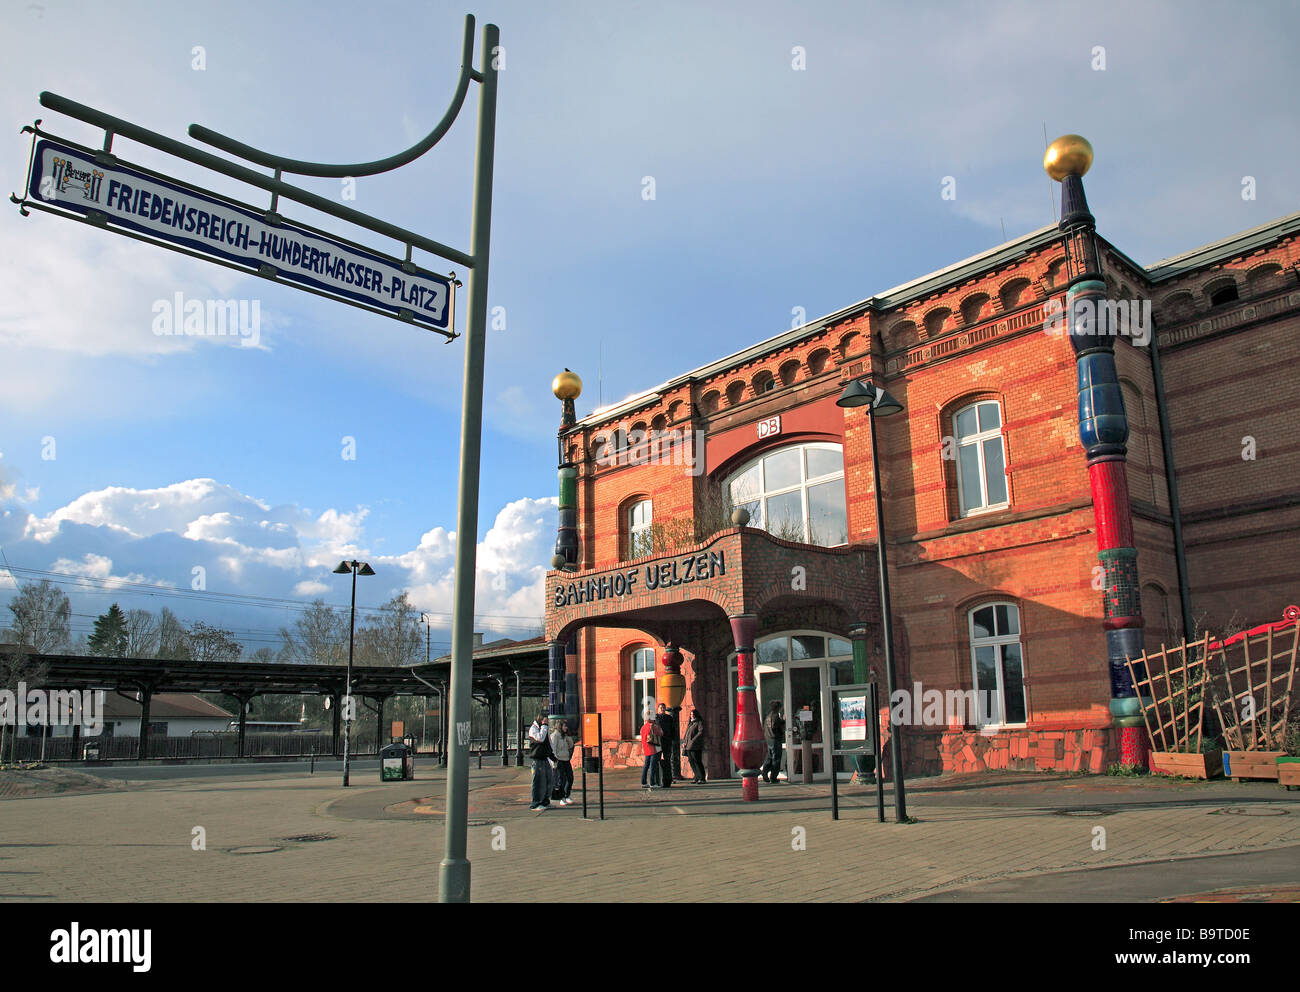 der Bahnhof Uelzen, entworfen von Friedensreich Hundertwasser-Niedersachsen-Deutschland Stockfoto